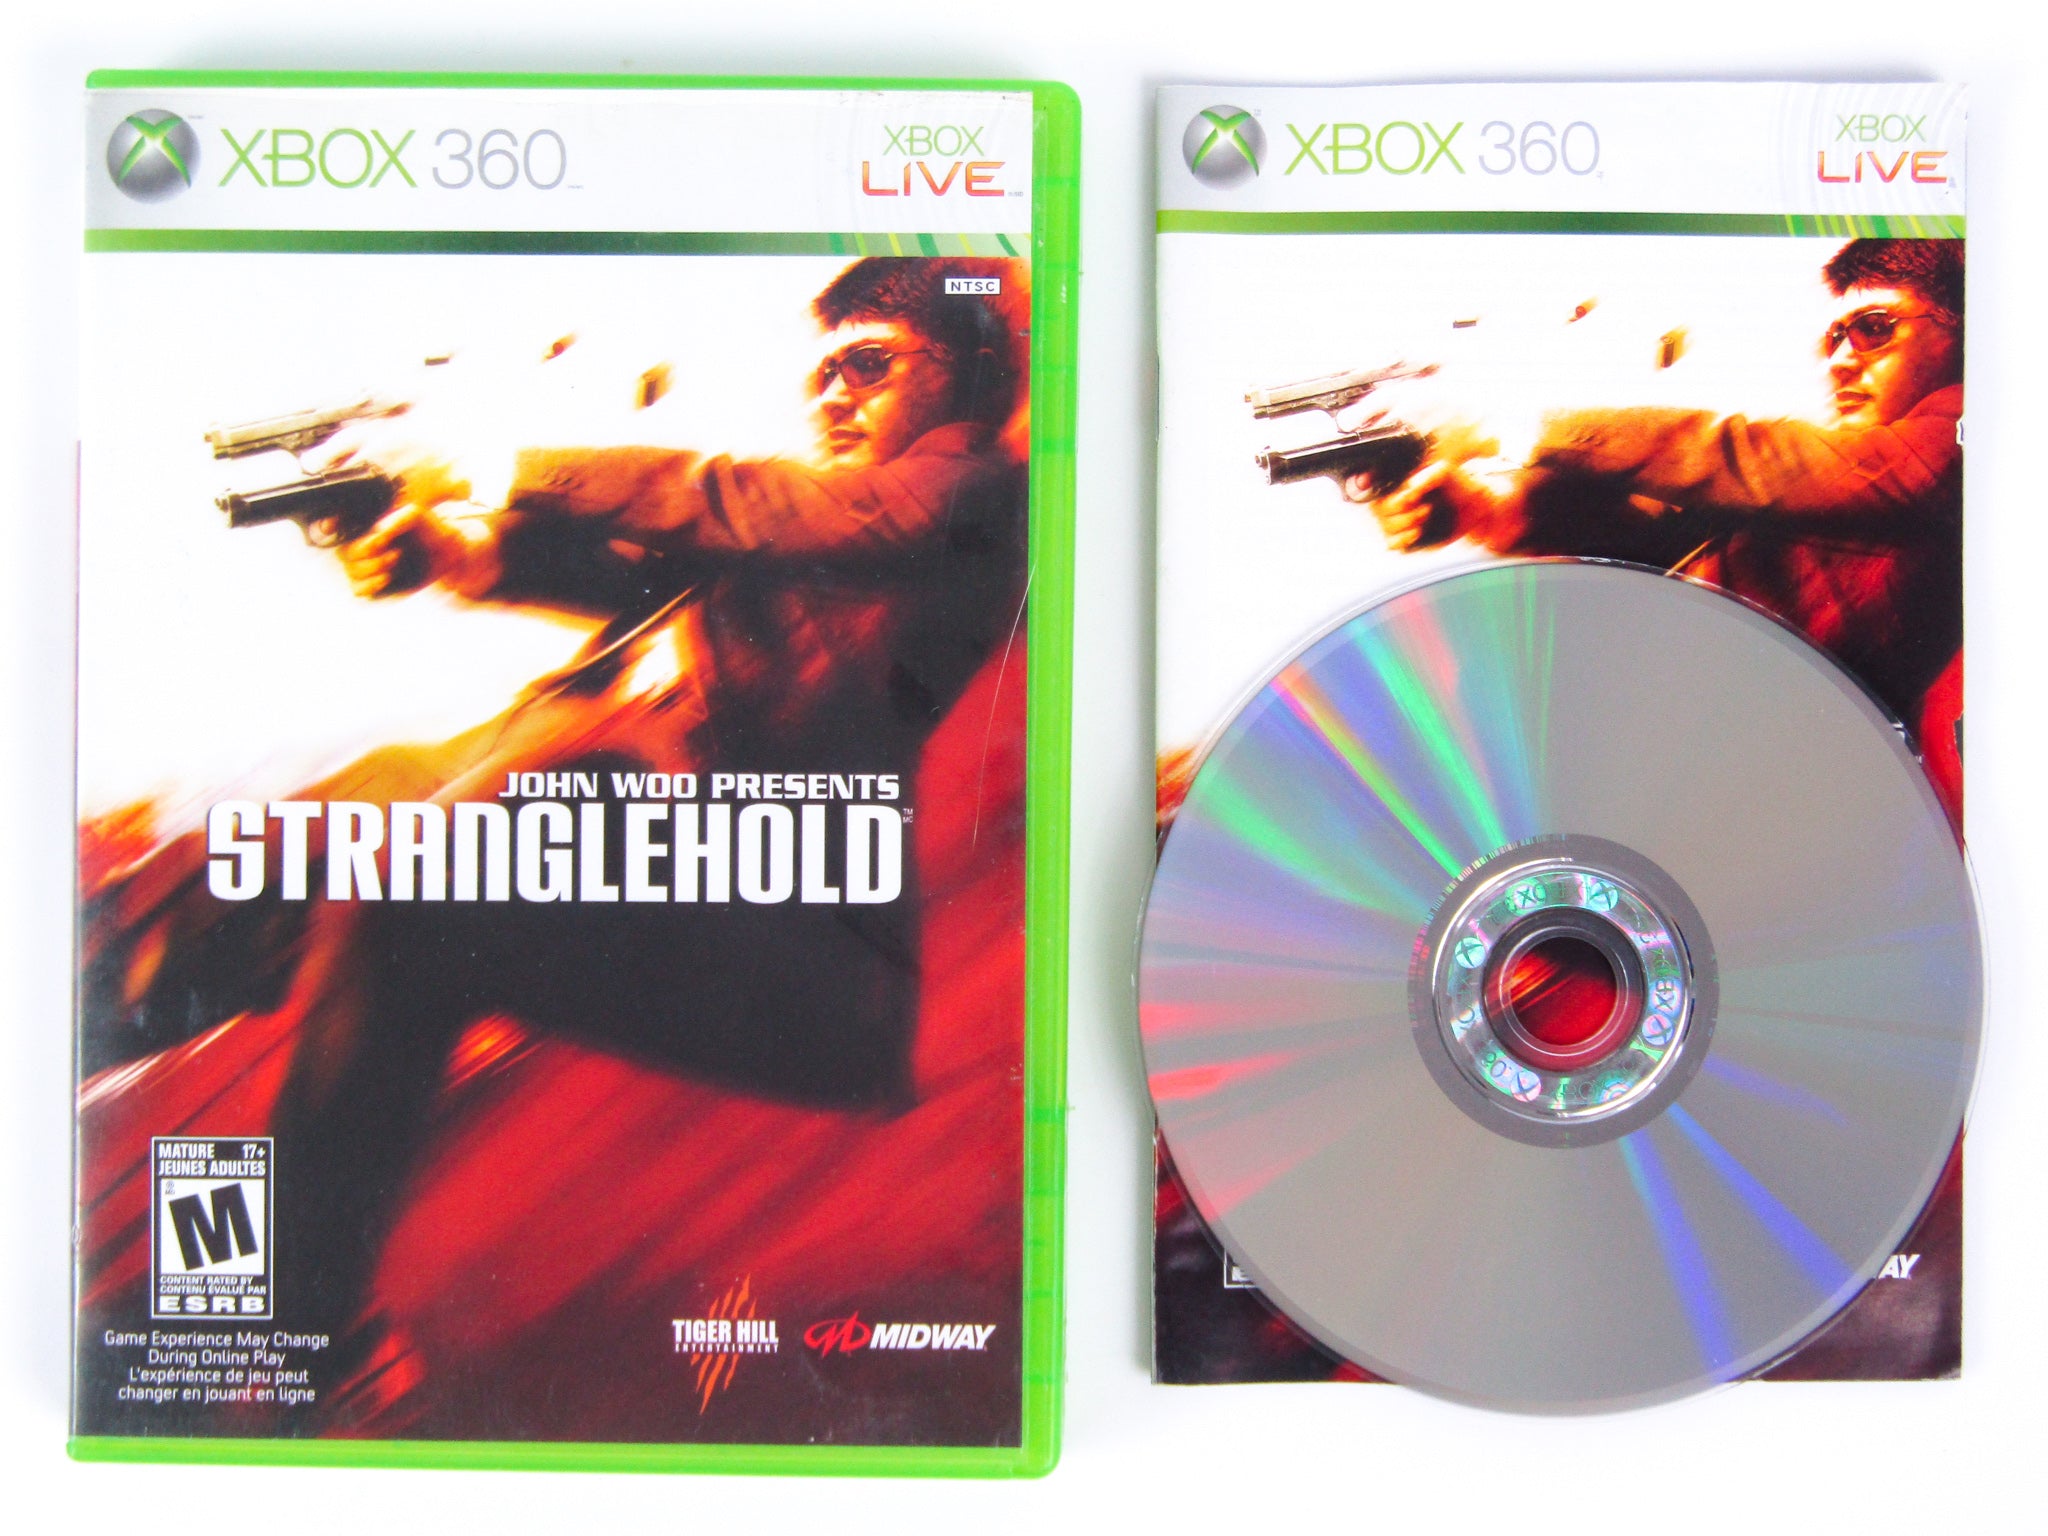 Jogo Stranglehold - Xbox 360 em Promoção na Americanas